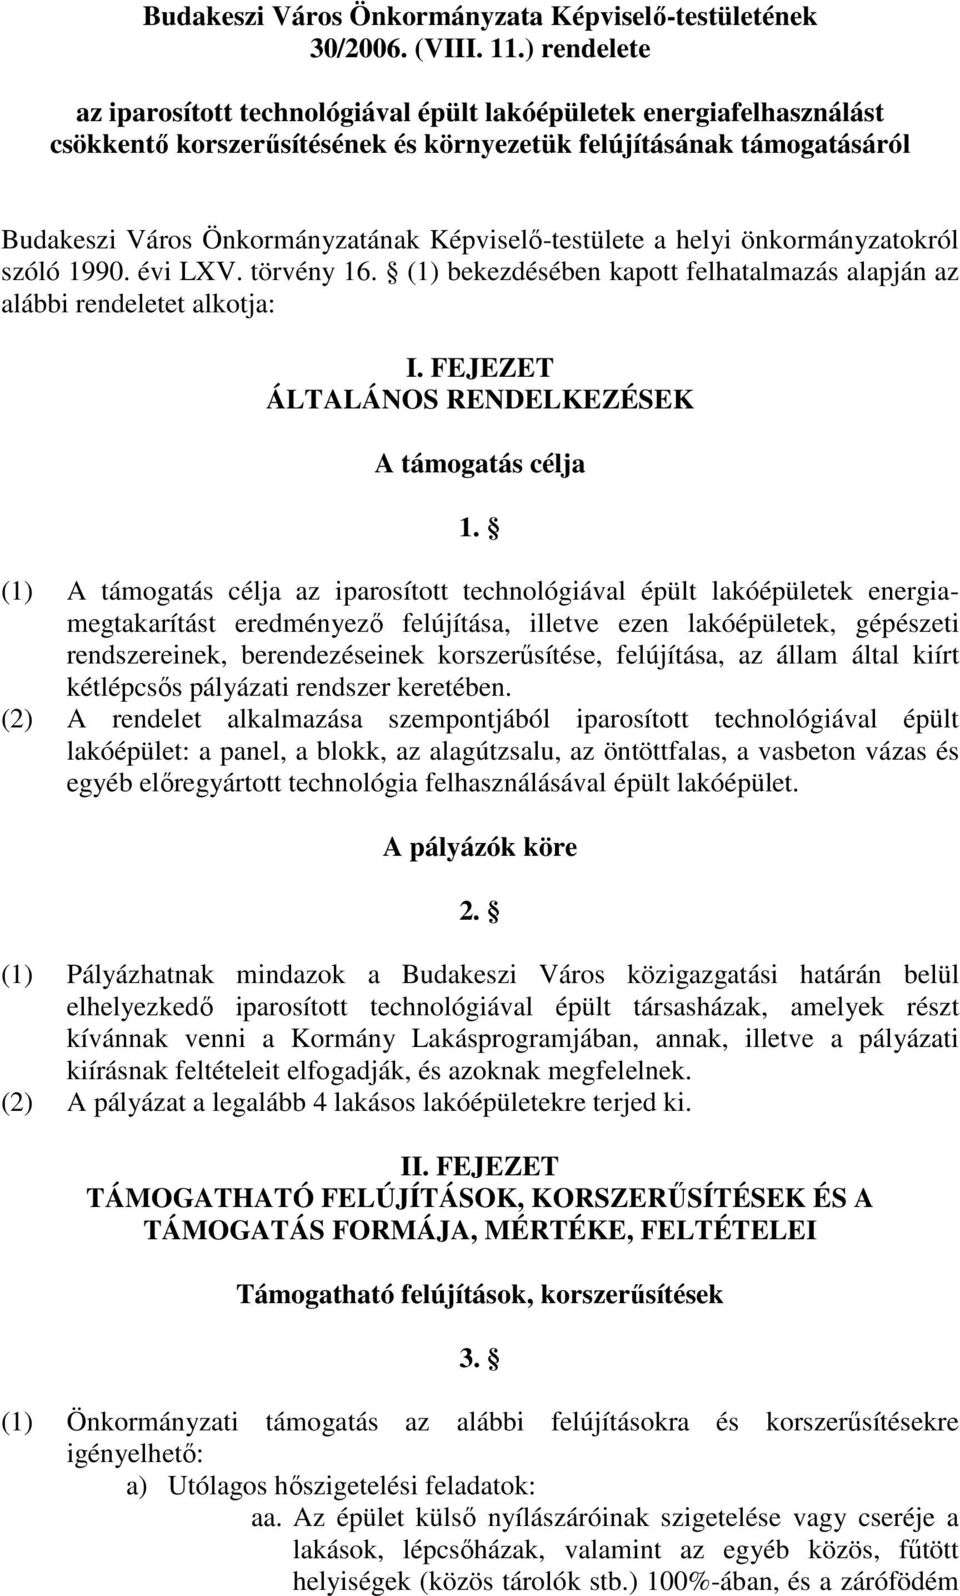 Képviselı-testülete a helyi önkormányzatokról szóló 1990. évi LXV. törvény 16. (1) bekezdésében kapott felhatalmazás alapján az alábbi rendeletet alkotja: I.